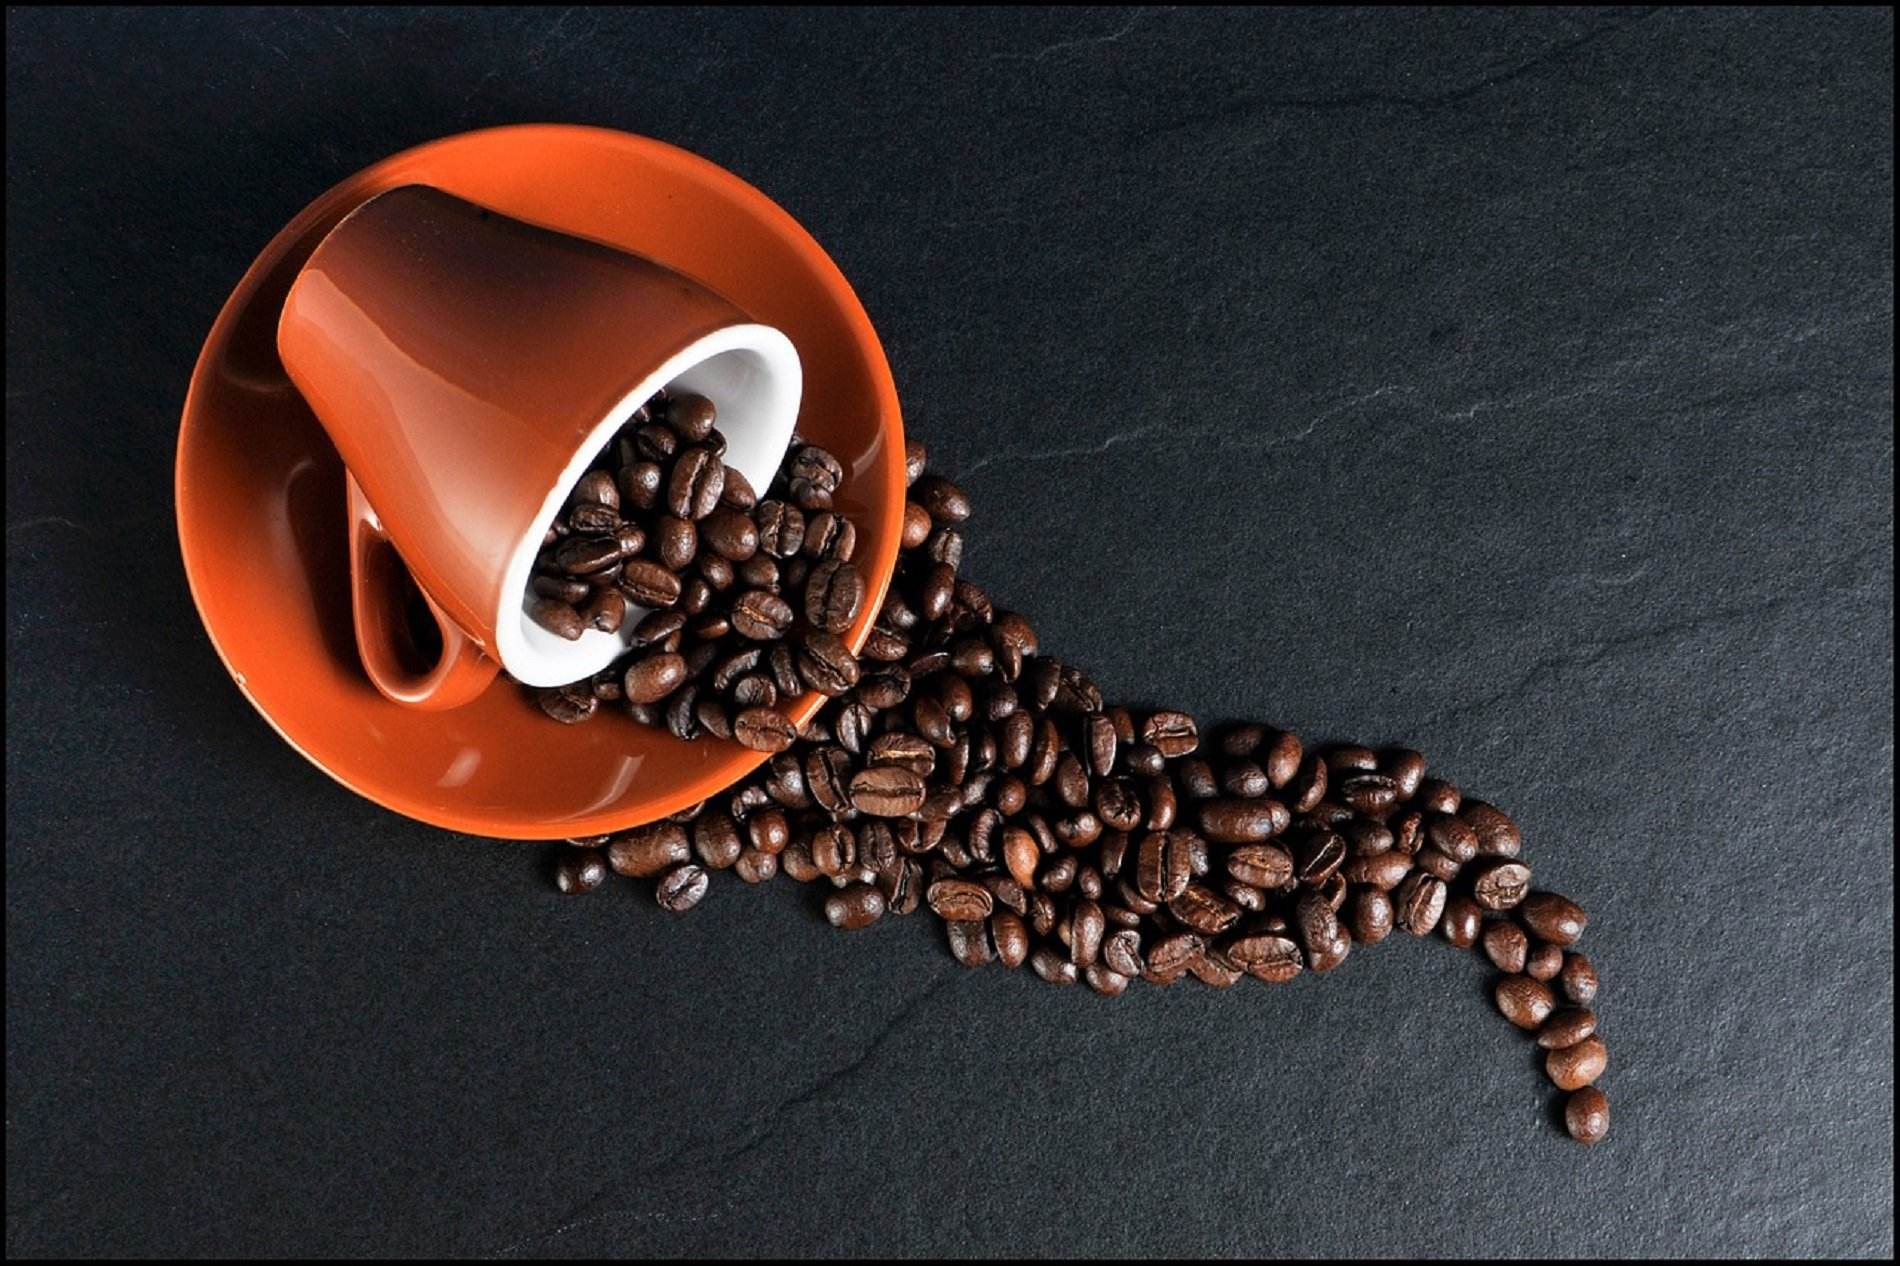 Els 4 moments del dia en els quals has d'evitar el cafè